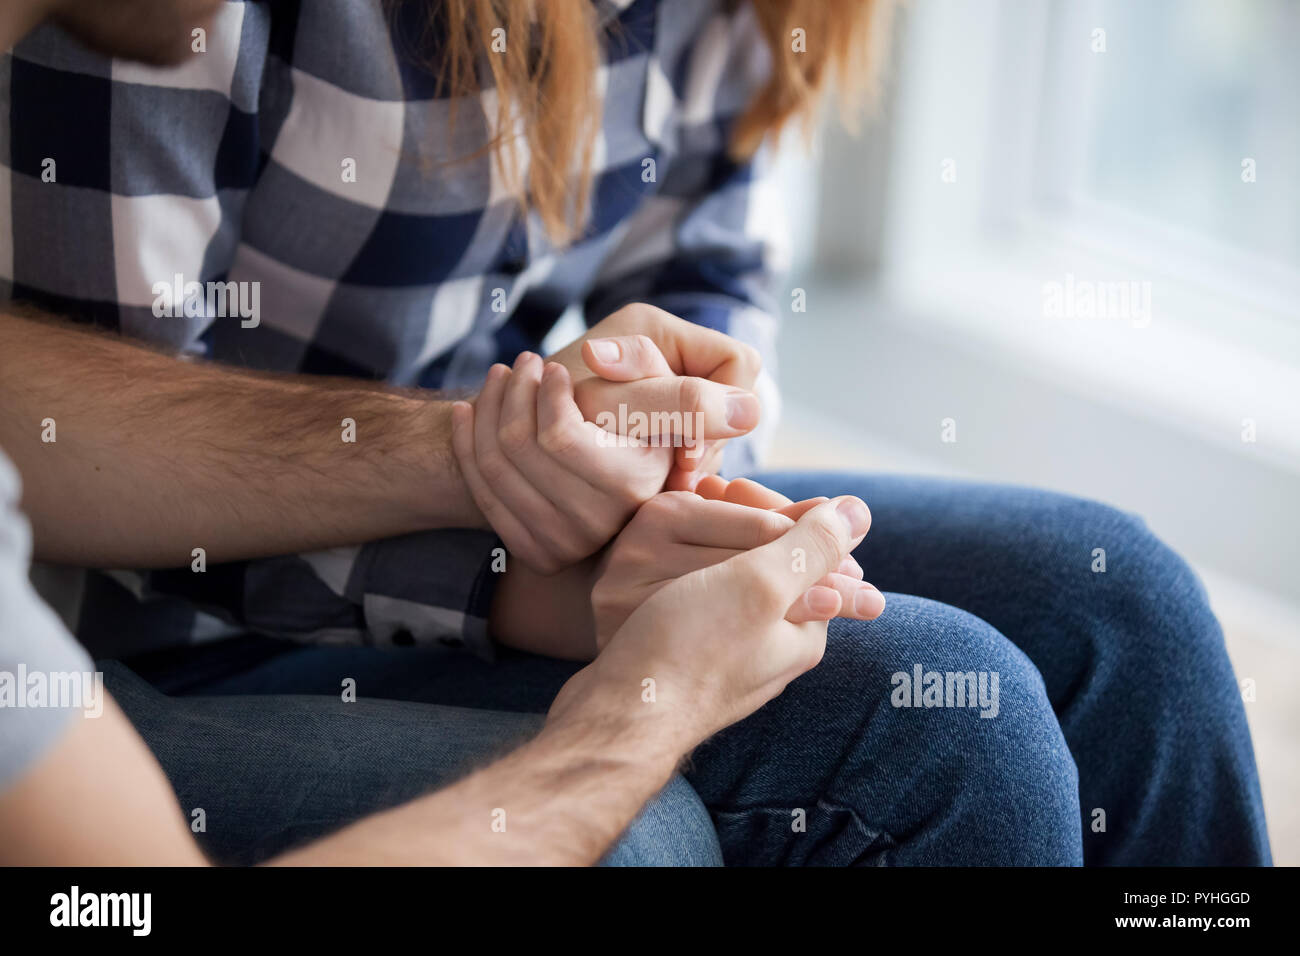 Giovane Holding Hands, Mostra amore e empatia close up Foto Stock